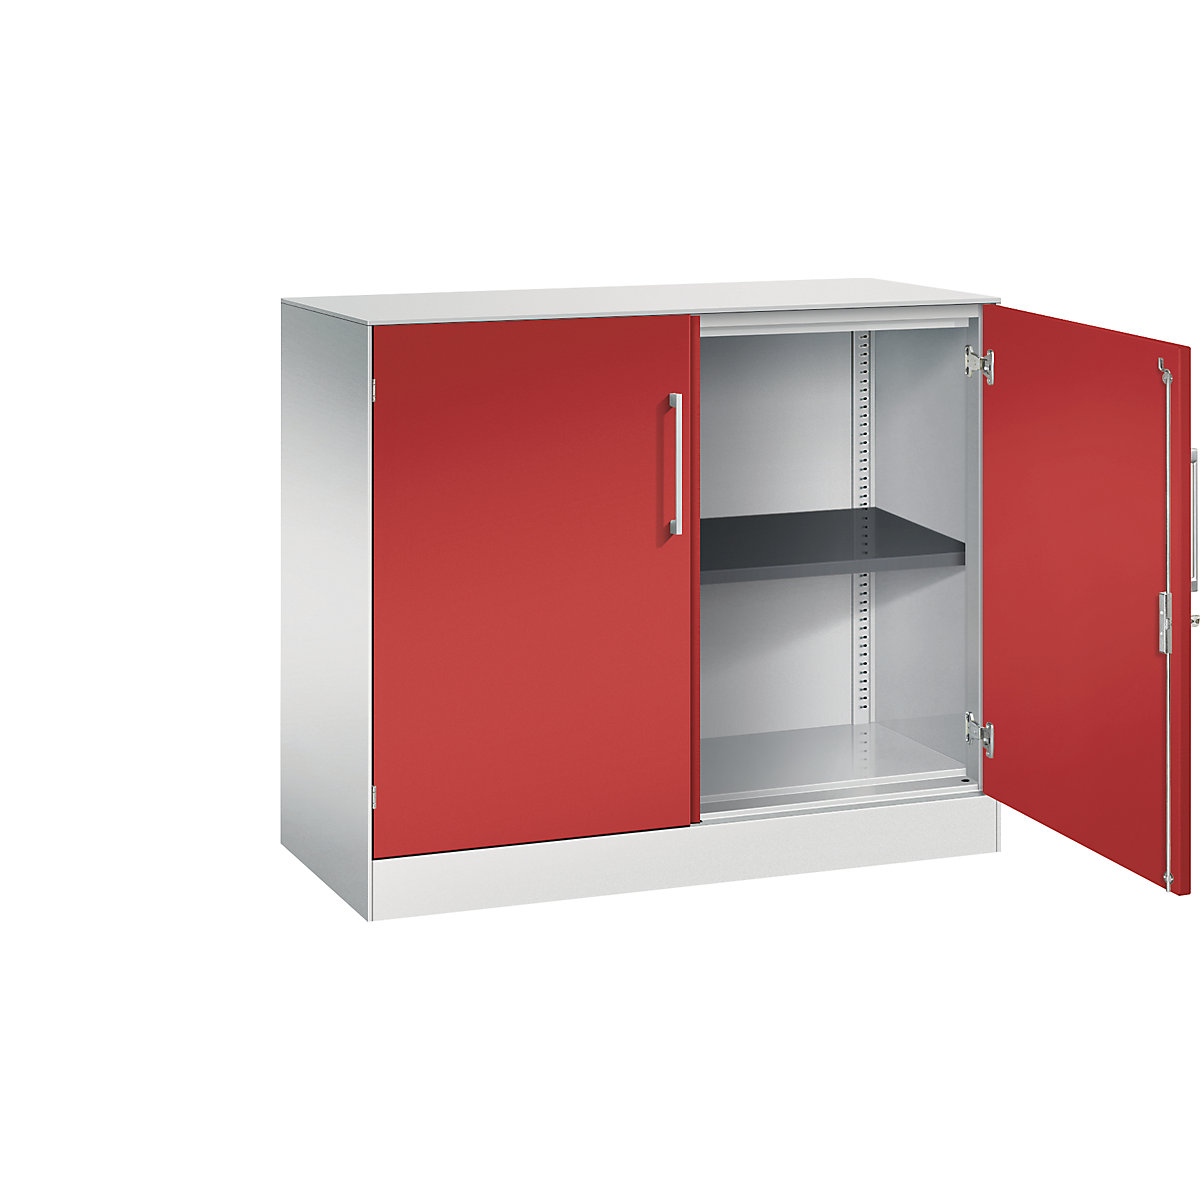 C+P – Skříň s otočnými dveřmi ASISTO, výška 897 mm, šířka 1000 mm, 1 police, světlá šedá/ohnivě červená